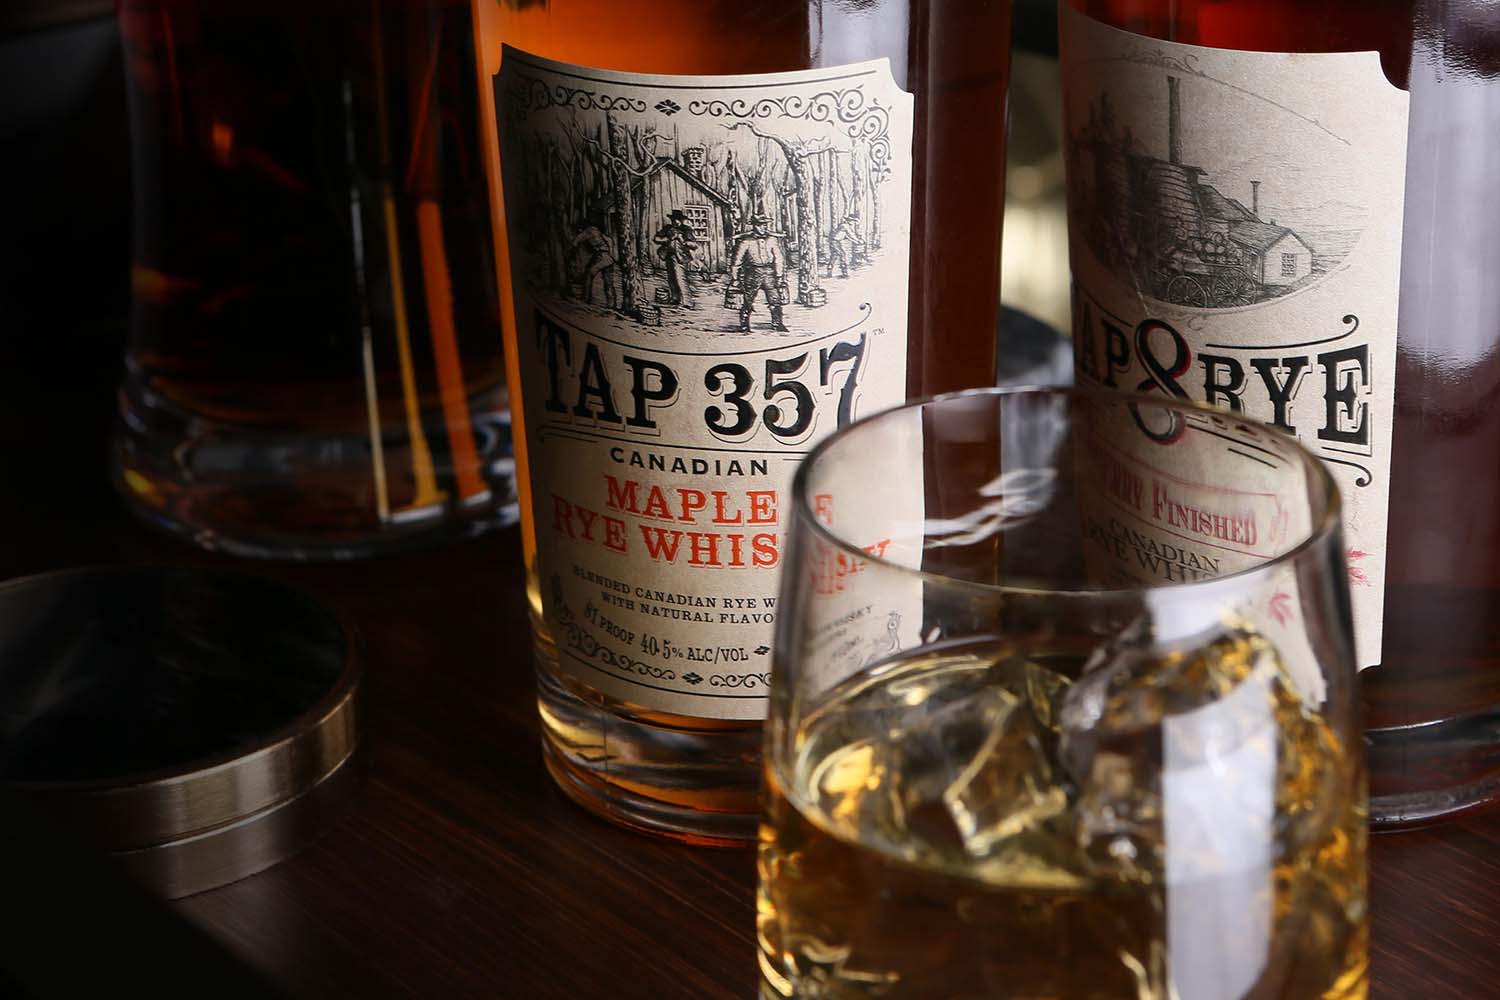 Tap 357 Maple Rye Whiskey